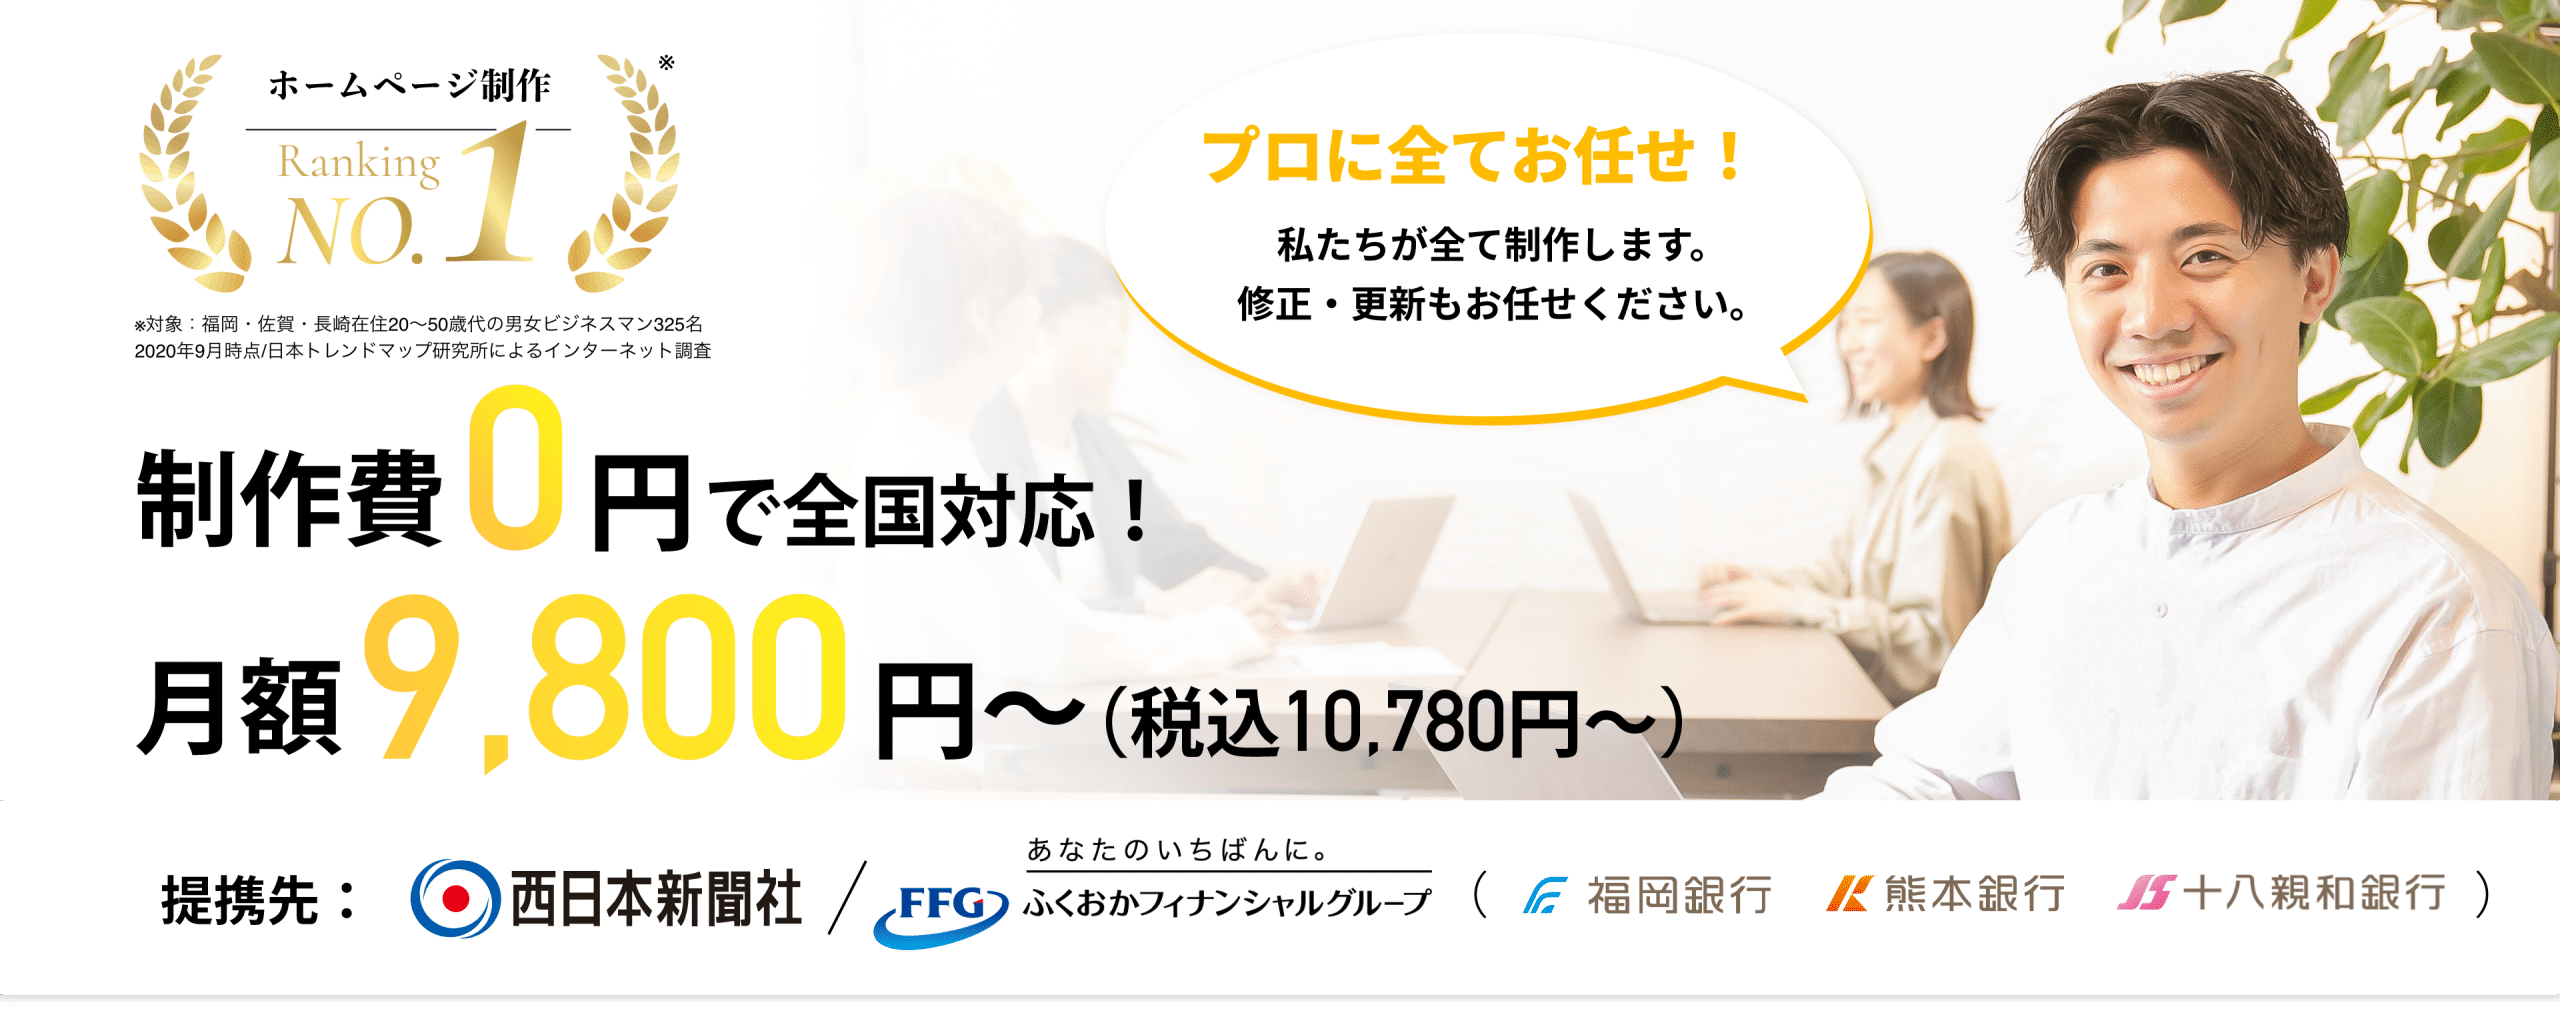 ホームページ制作 BARIYOKA-ばりよか- 制作費用0円、月額9,800円(税込10,780円）さまざまなSNSと連動可能